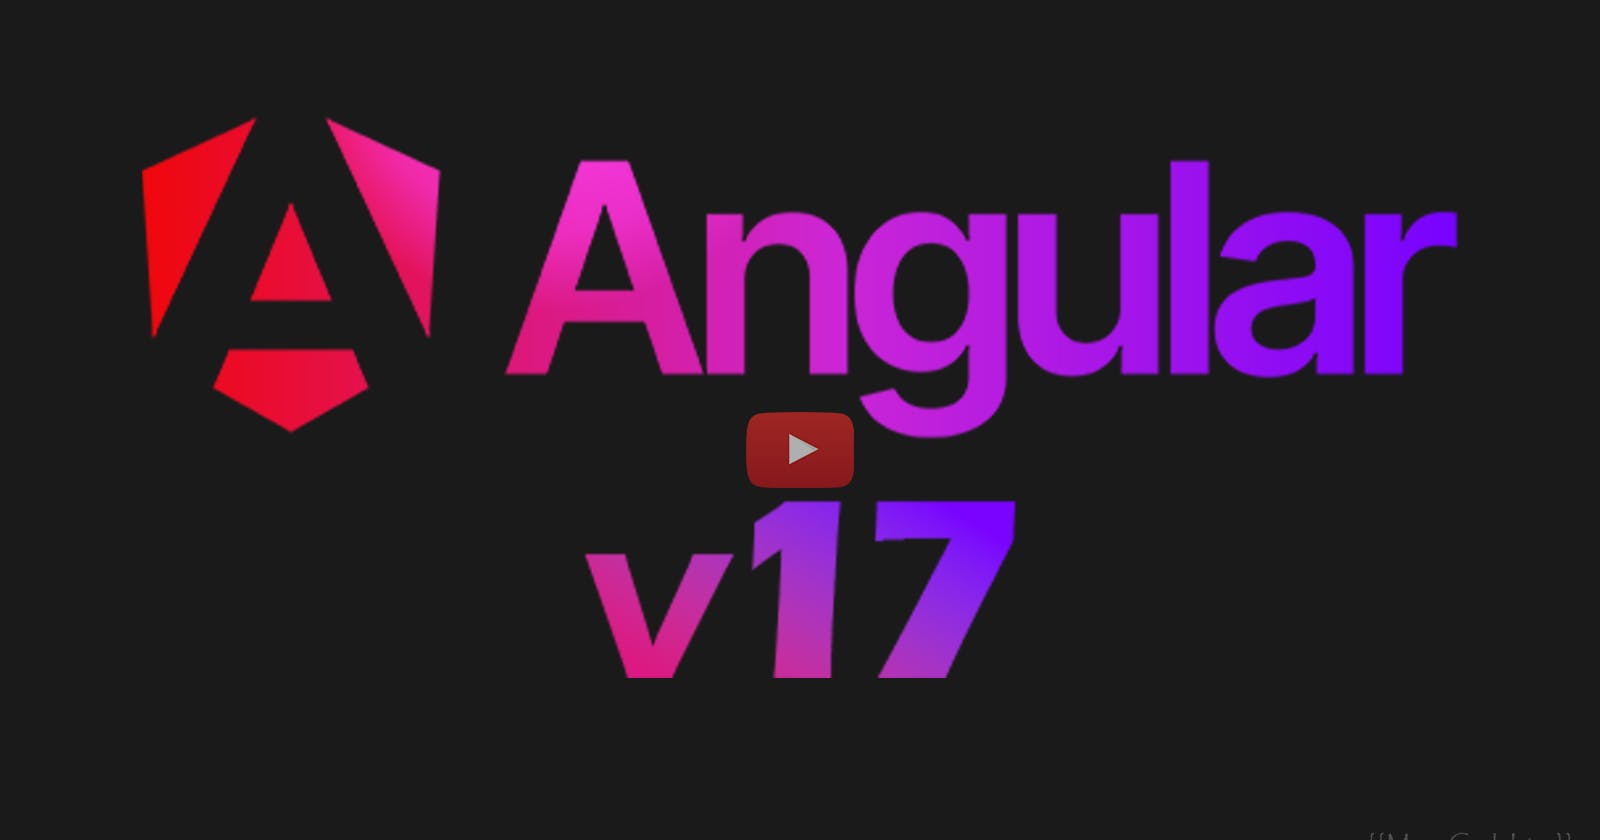 Angular v17 Walk Through